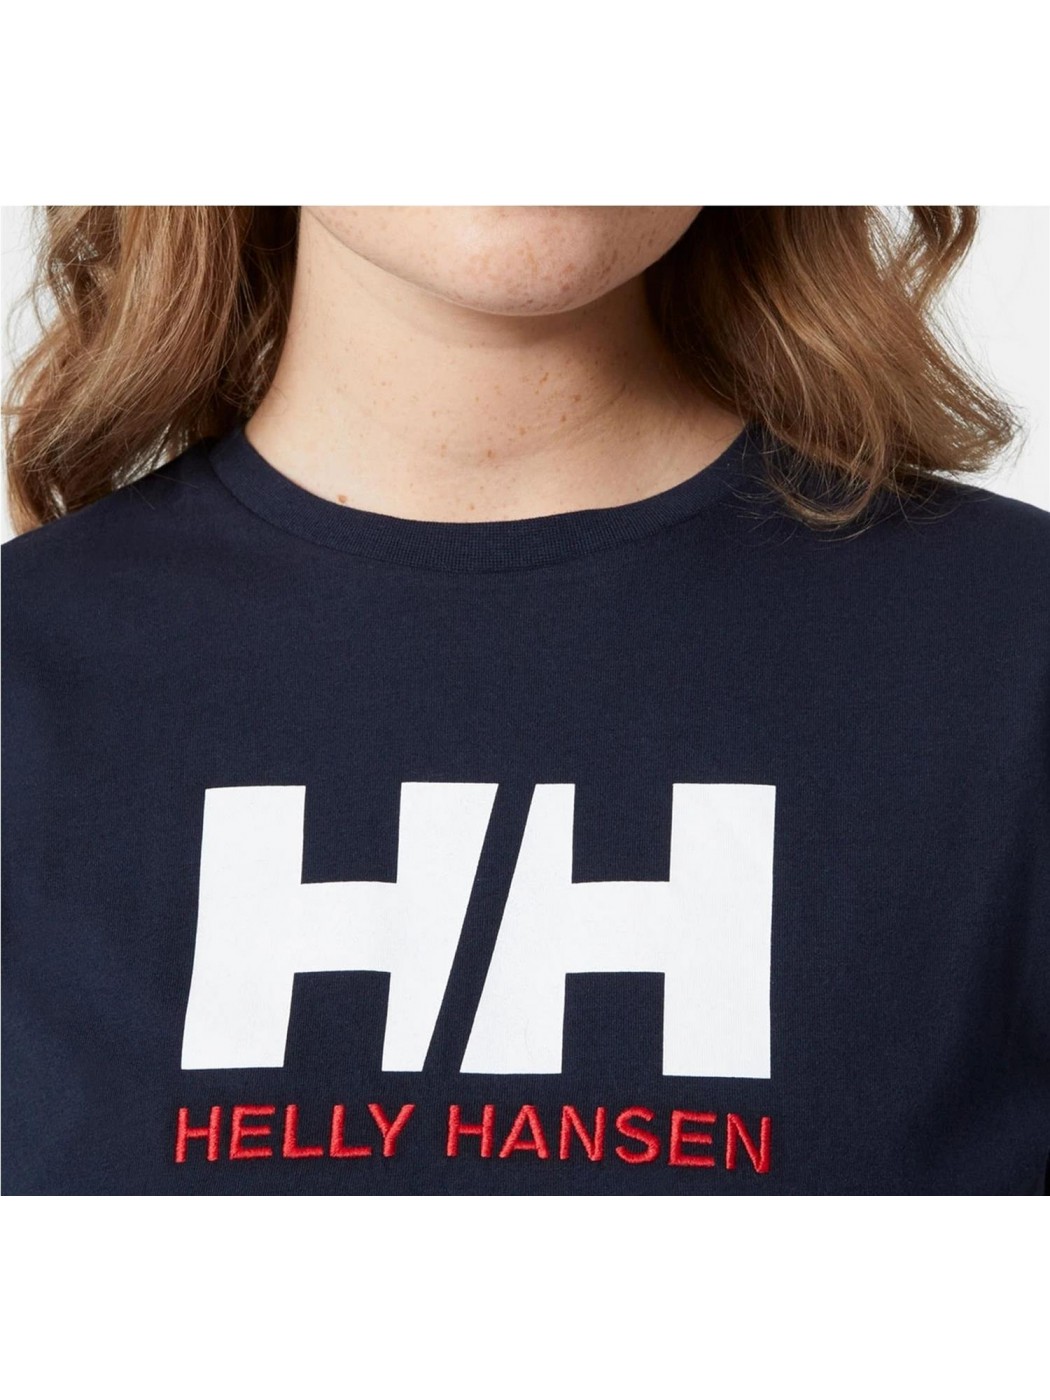 Camisetas Helly Hansen para Hombre en Rebajas - Outlet Online